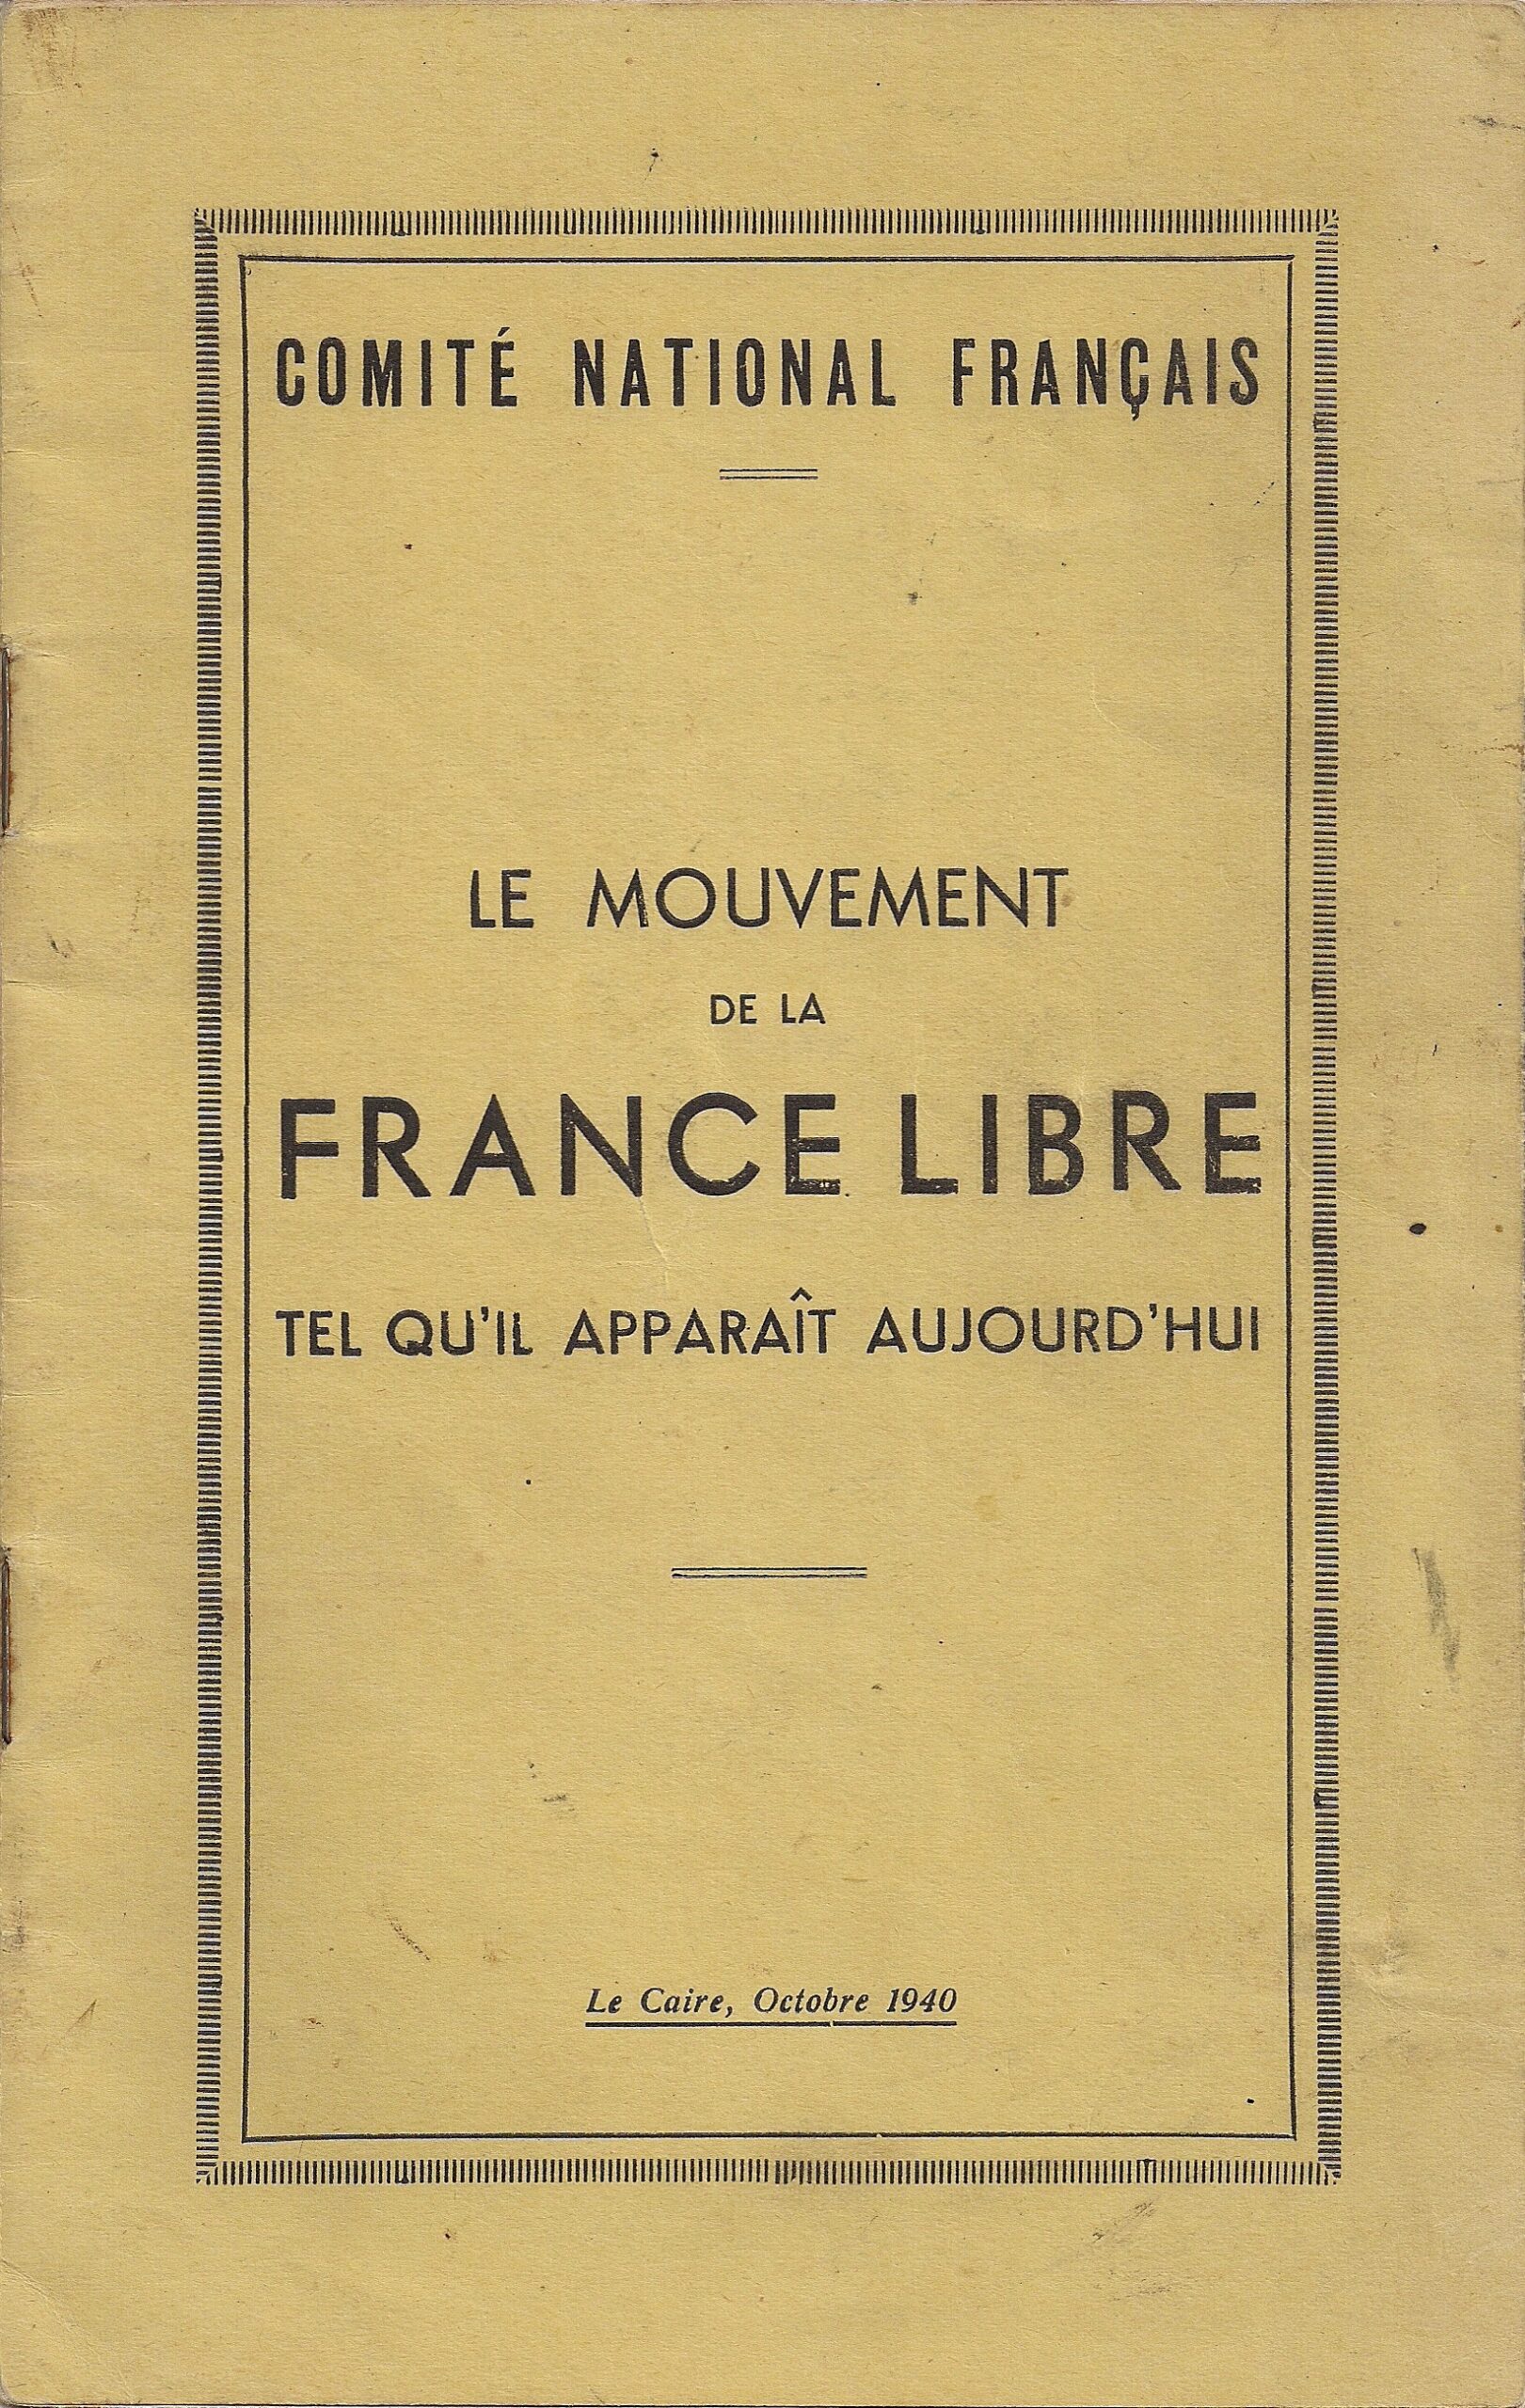 Le mouvement de la France Libre tel qu’il apparaît aujourd’hui